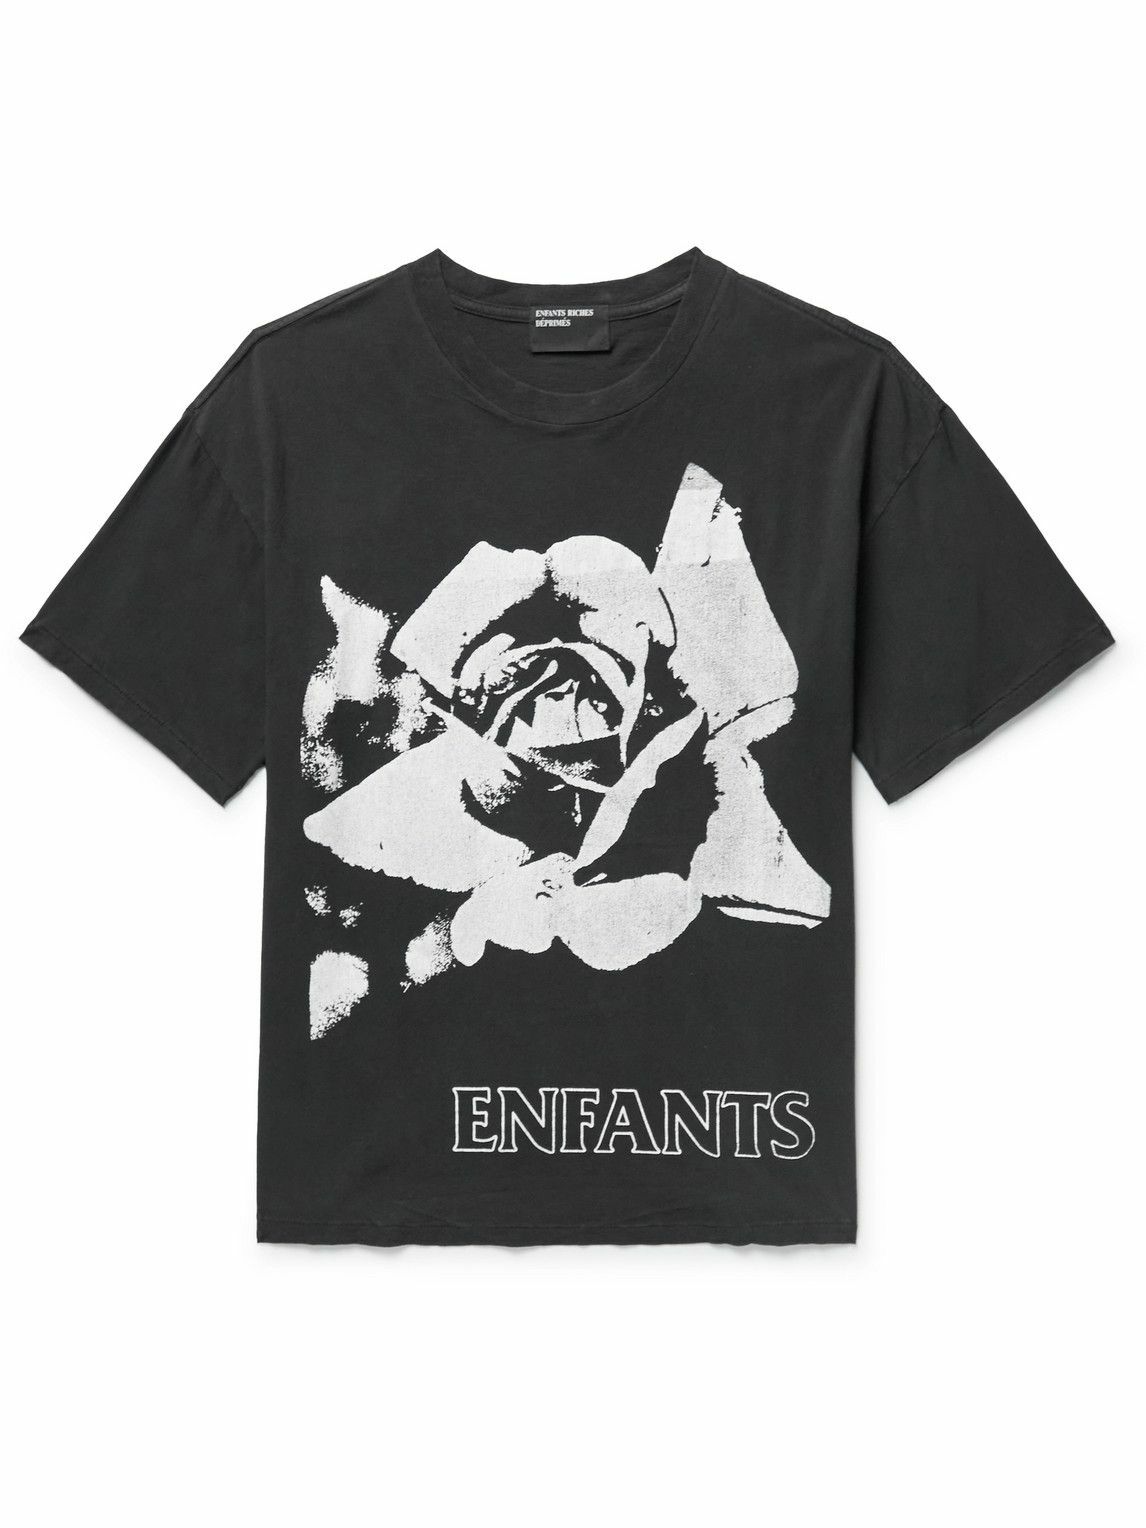 Enfants Riches Déprimés - Printed Cotton-Jersey T-Shirt - Black Enfants ...